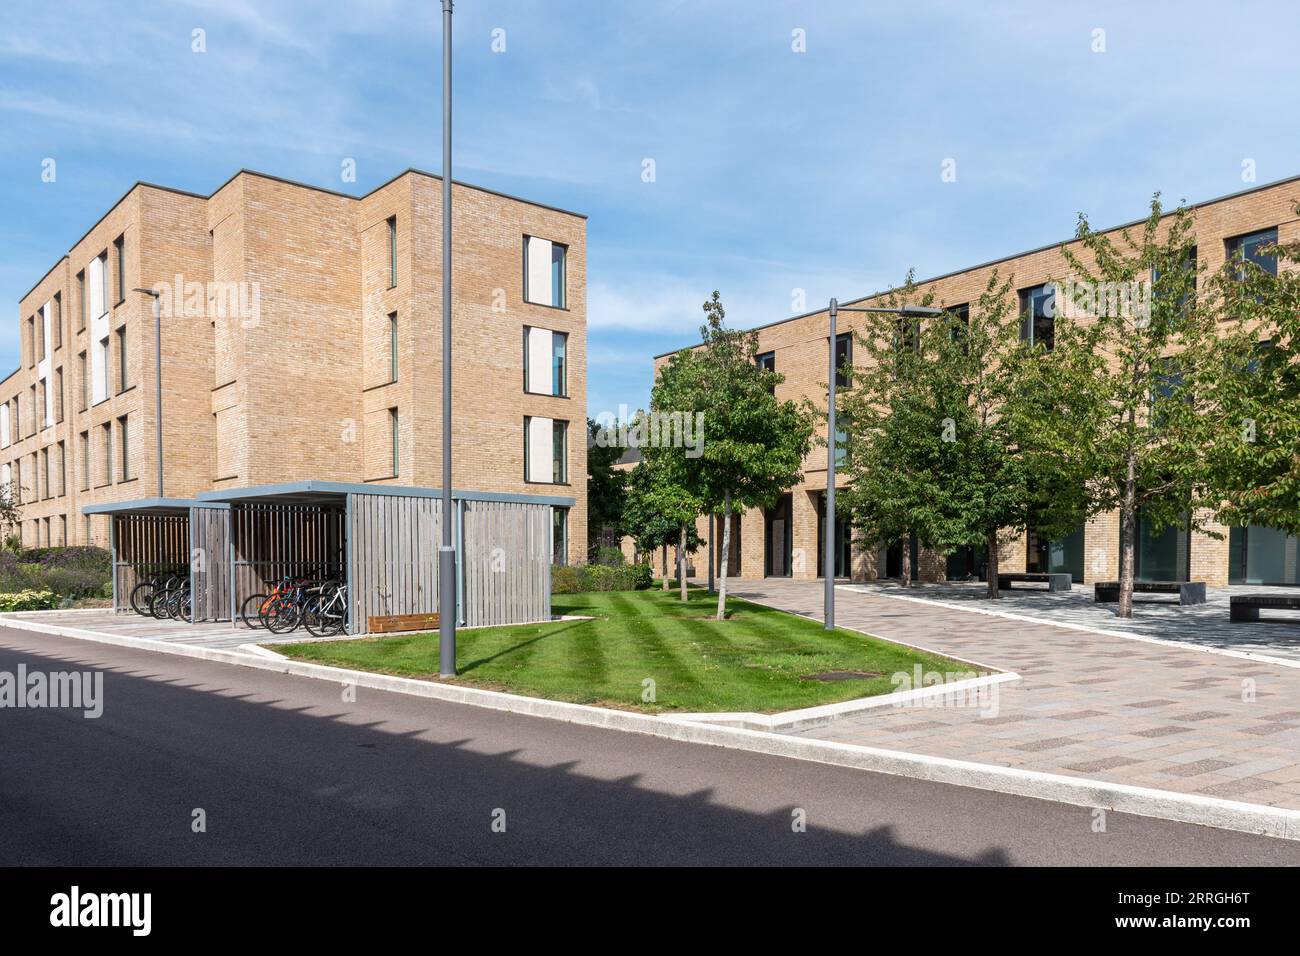 Hox Park Halls of Residence, nouveau logement étudiant près d'Egham, Surrey, Angleterre, Royaume-Uni, pour les étudiants de l'Université de Londres Royal Holloway, 2023 Banque D'Images